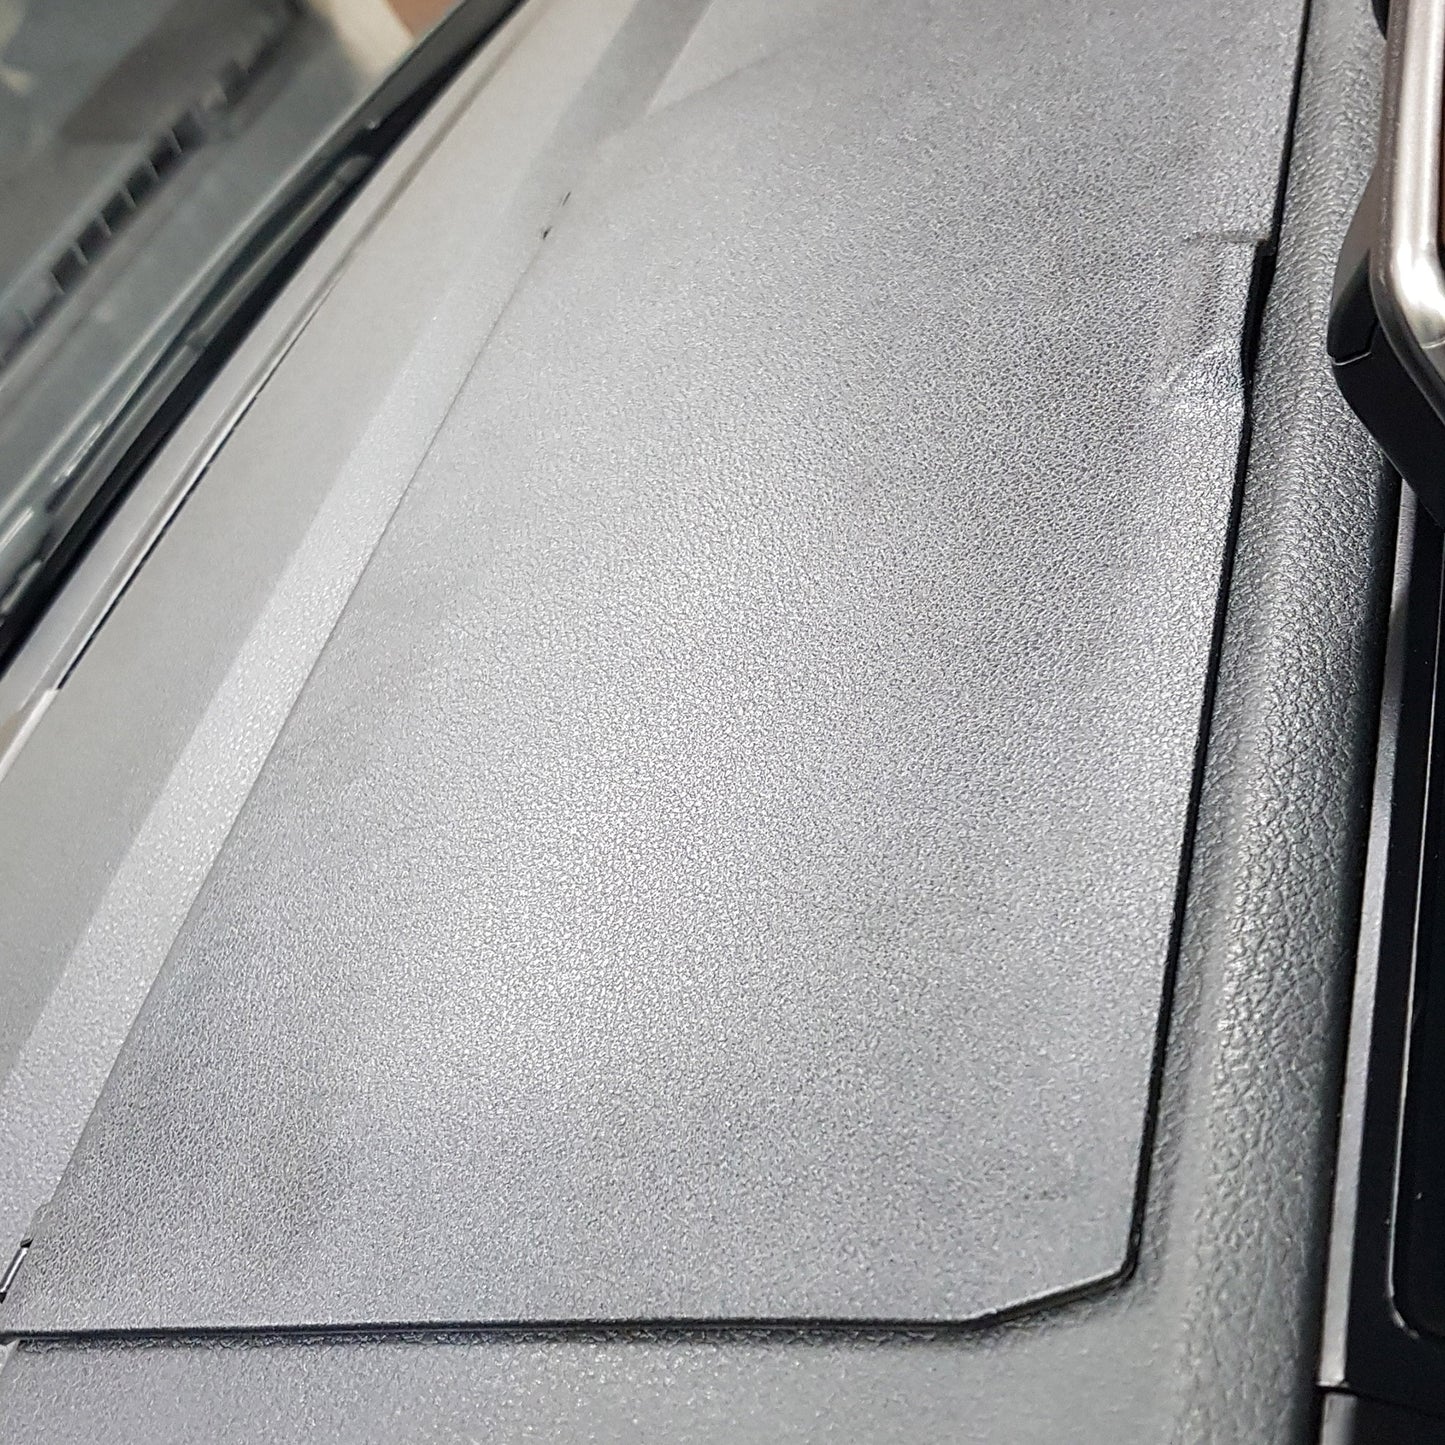 VW T6 van comfort dashboard look Top Dash Console Lid latest upgrade for T6 camper-van interior upgrade update